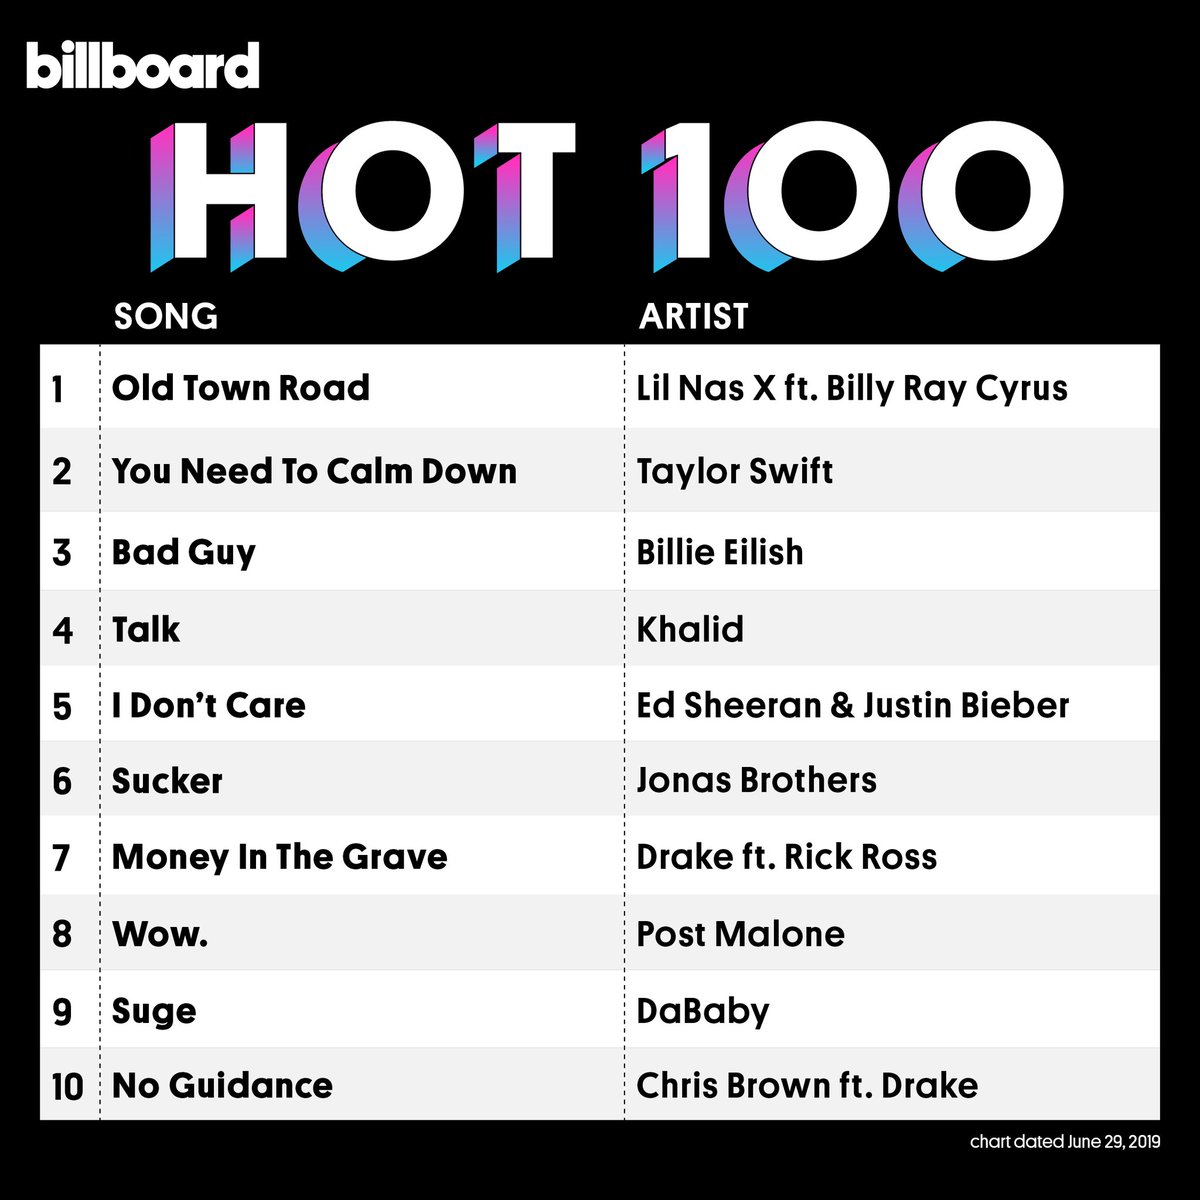 Az Old Town Road elérte a 1 számot a Billboard Hot 100-on